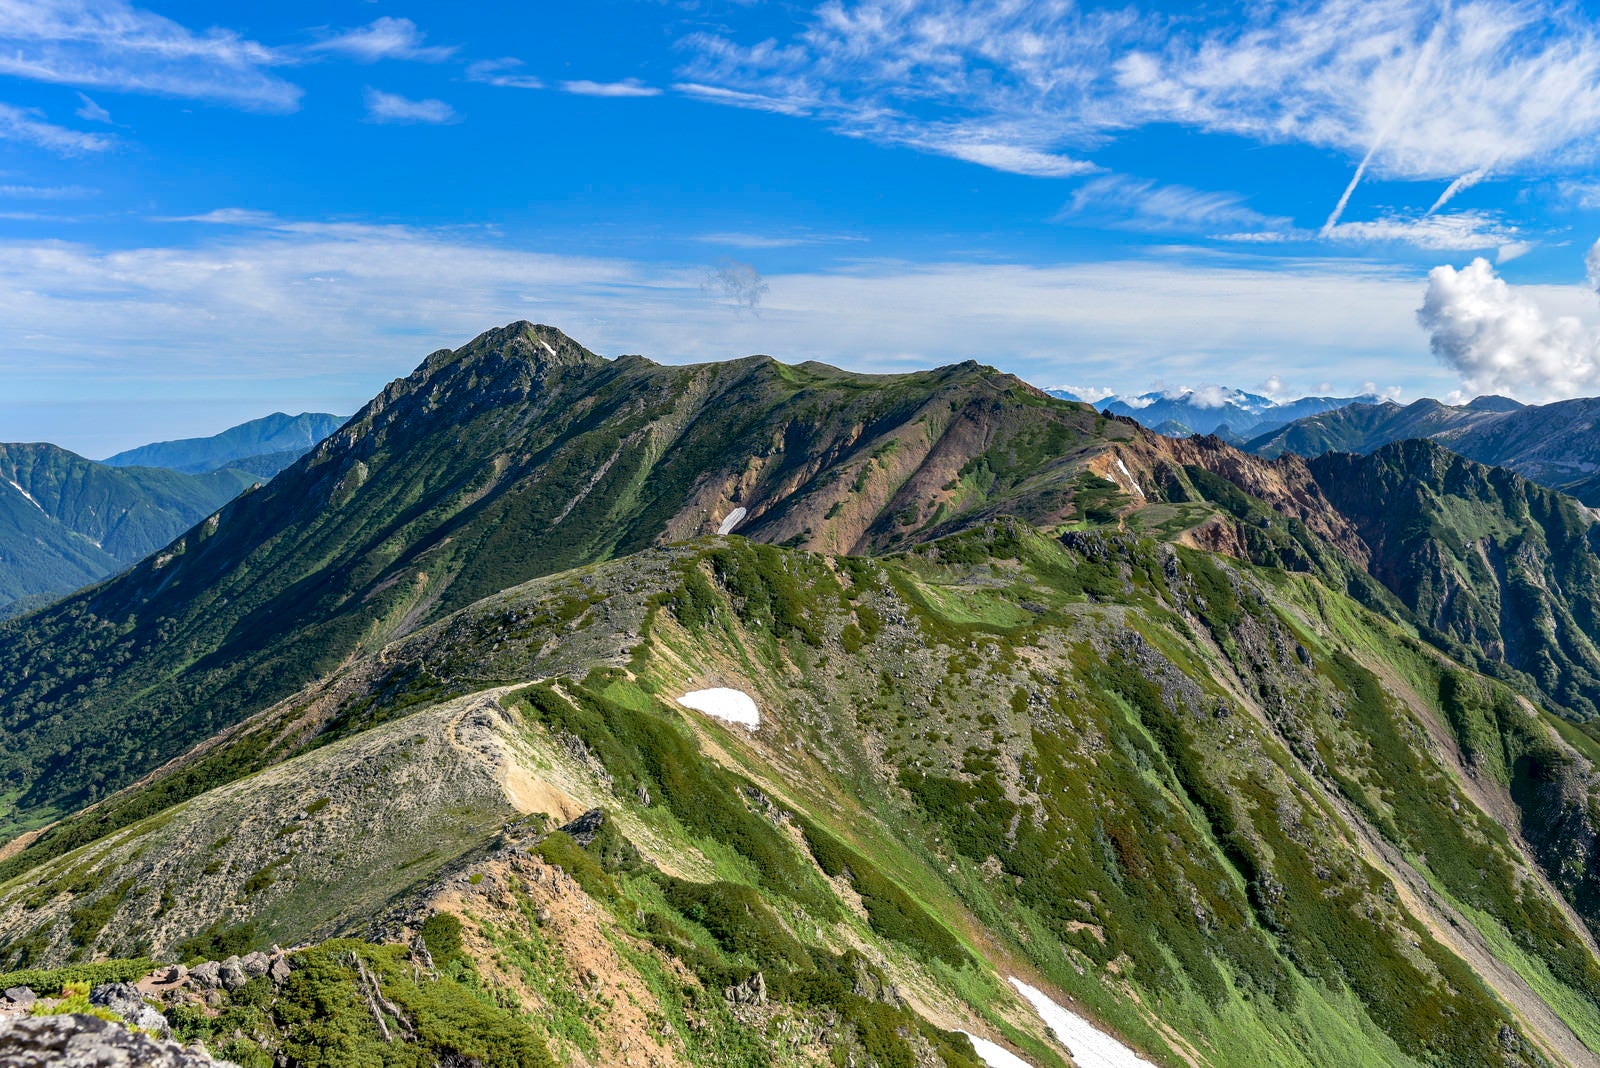 「鷲羽岳から水晶岳へと続く稜線」の写真